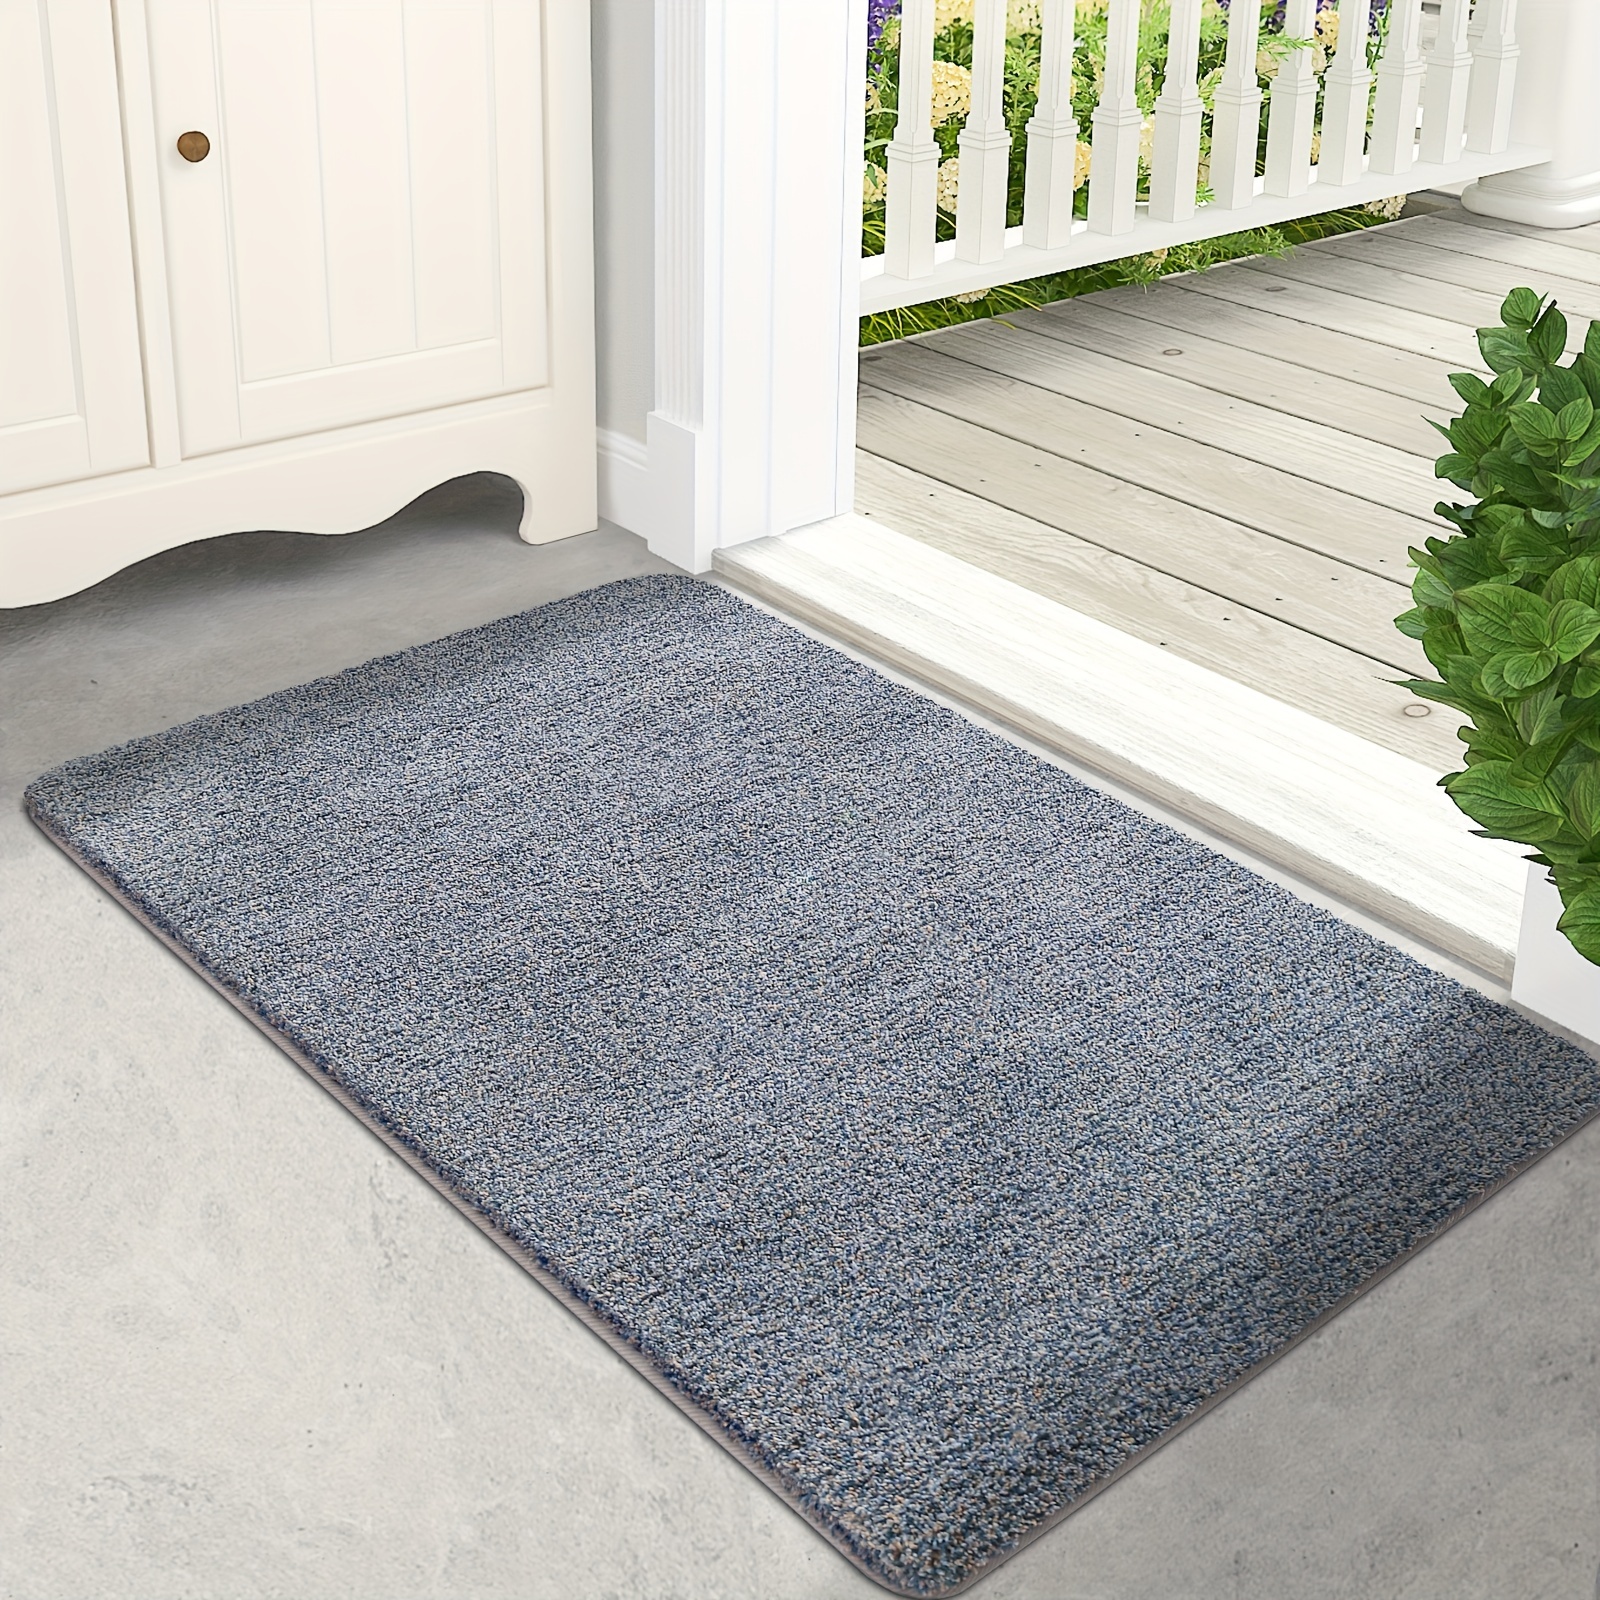 KIMODE Indoor Door Mat, Non-Slip Machine Washable Entryway Rug, Low-Profile  Doormat for Front Back Door Porch Entrance, Absorbent Resist Dirt Floor